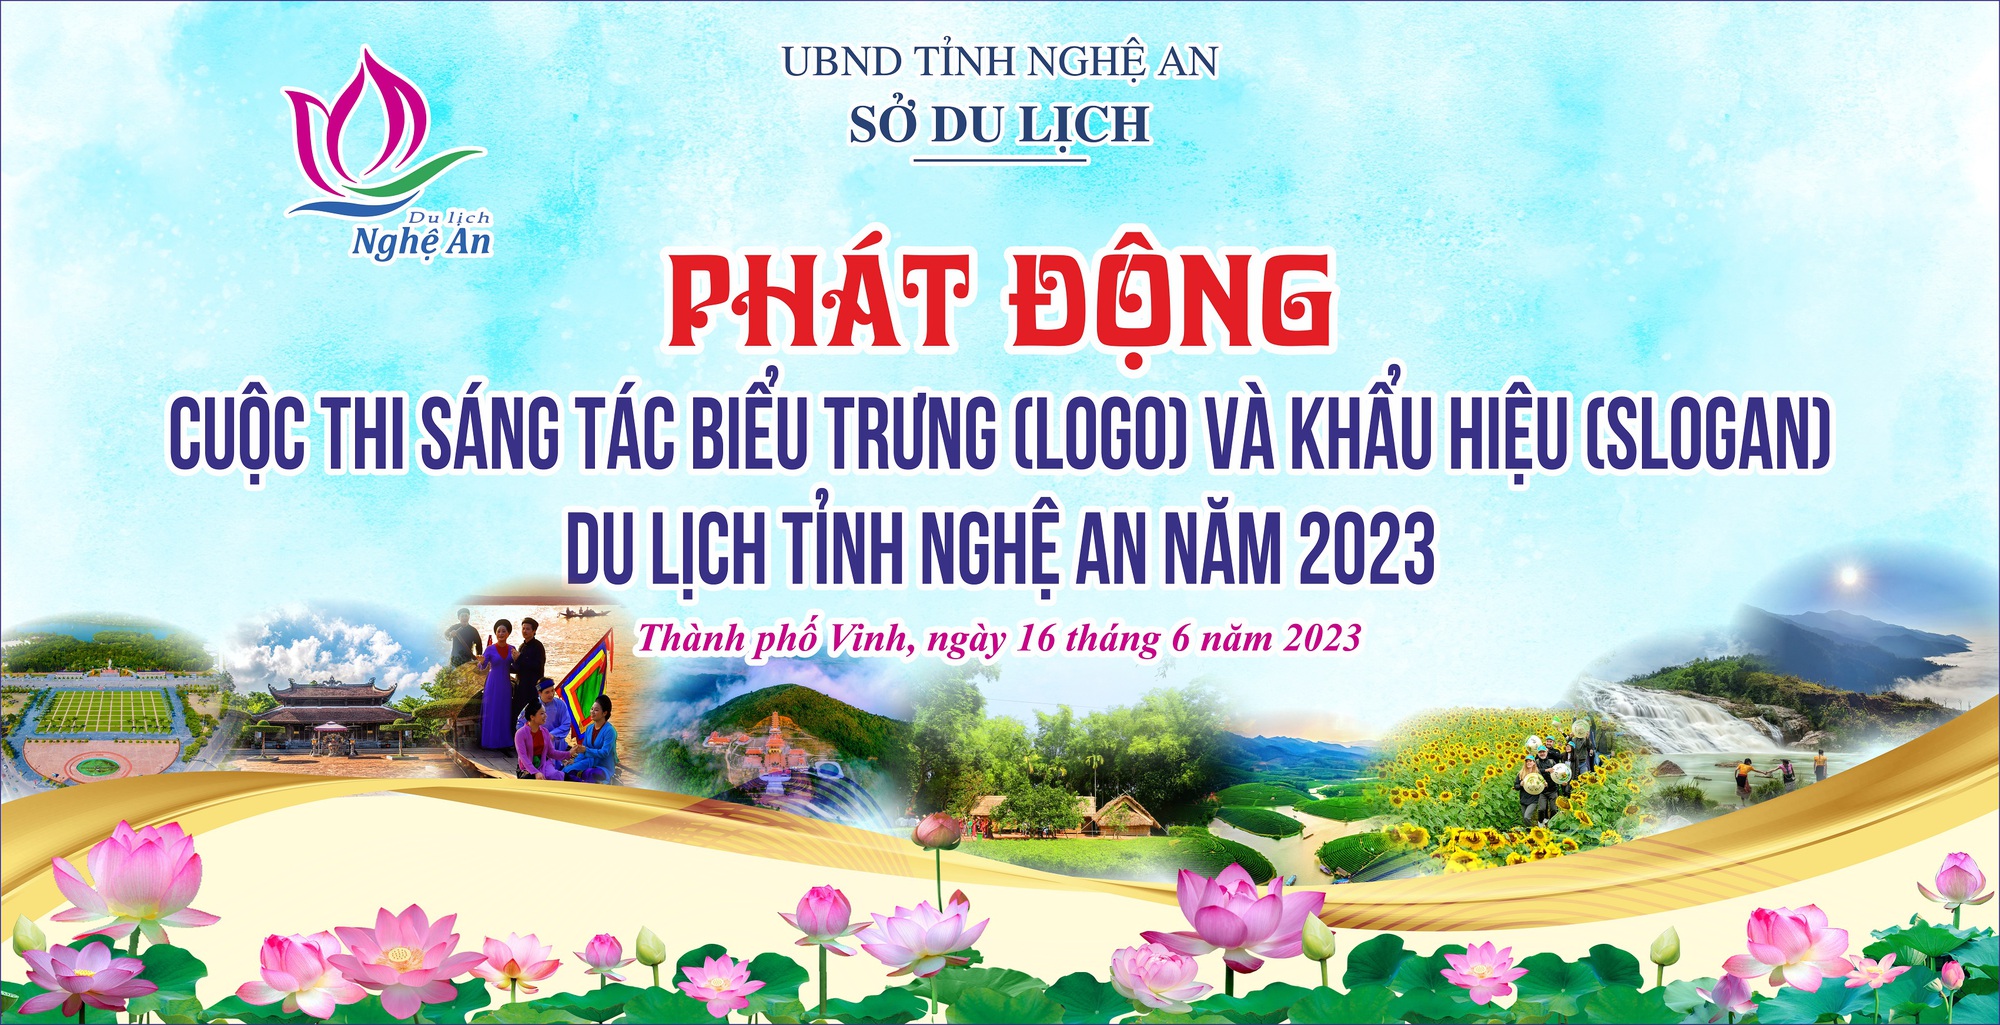 Phát động cuộc thi sáng tác biểu trưng và khẩu hiệu du lịch tỉnh Nghệ An năm 2023 - Ảnh 1.